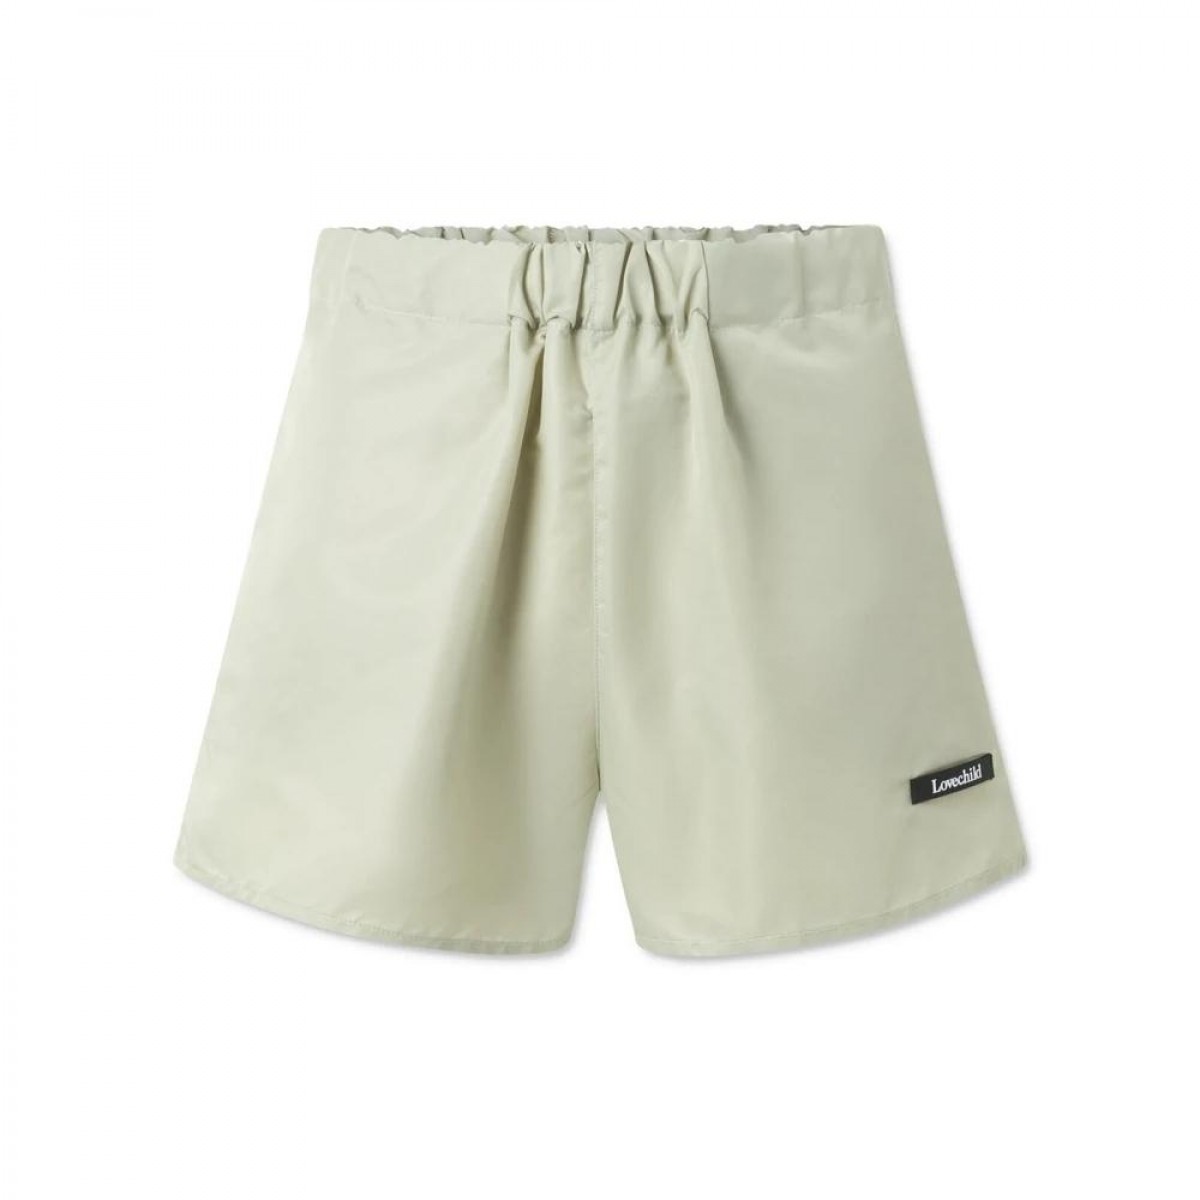 alessio shorts - saga green - front